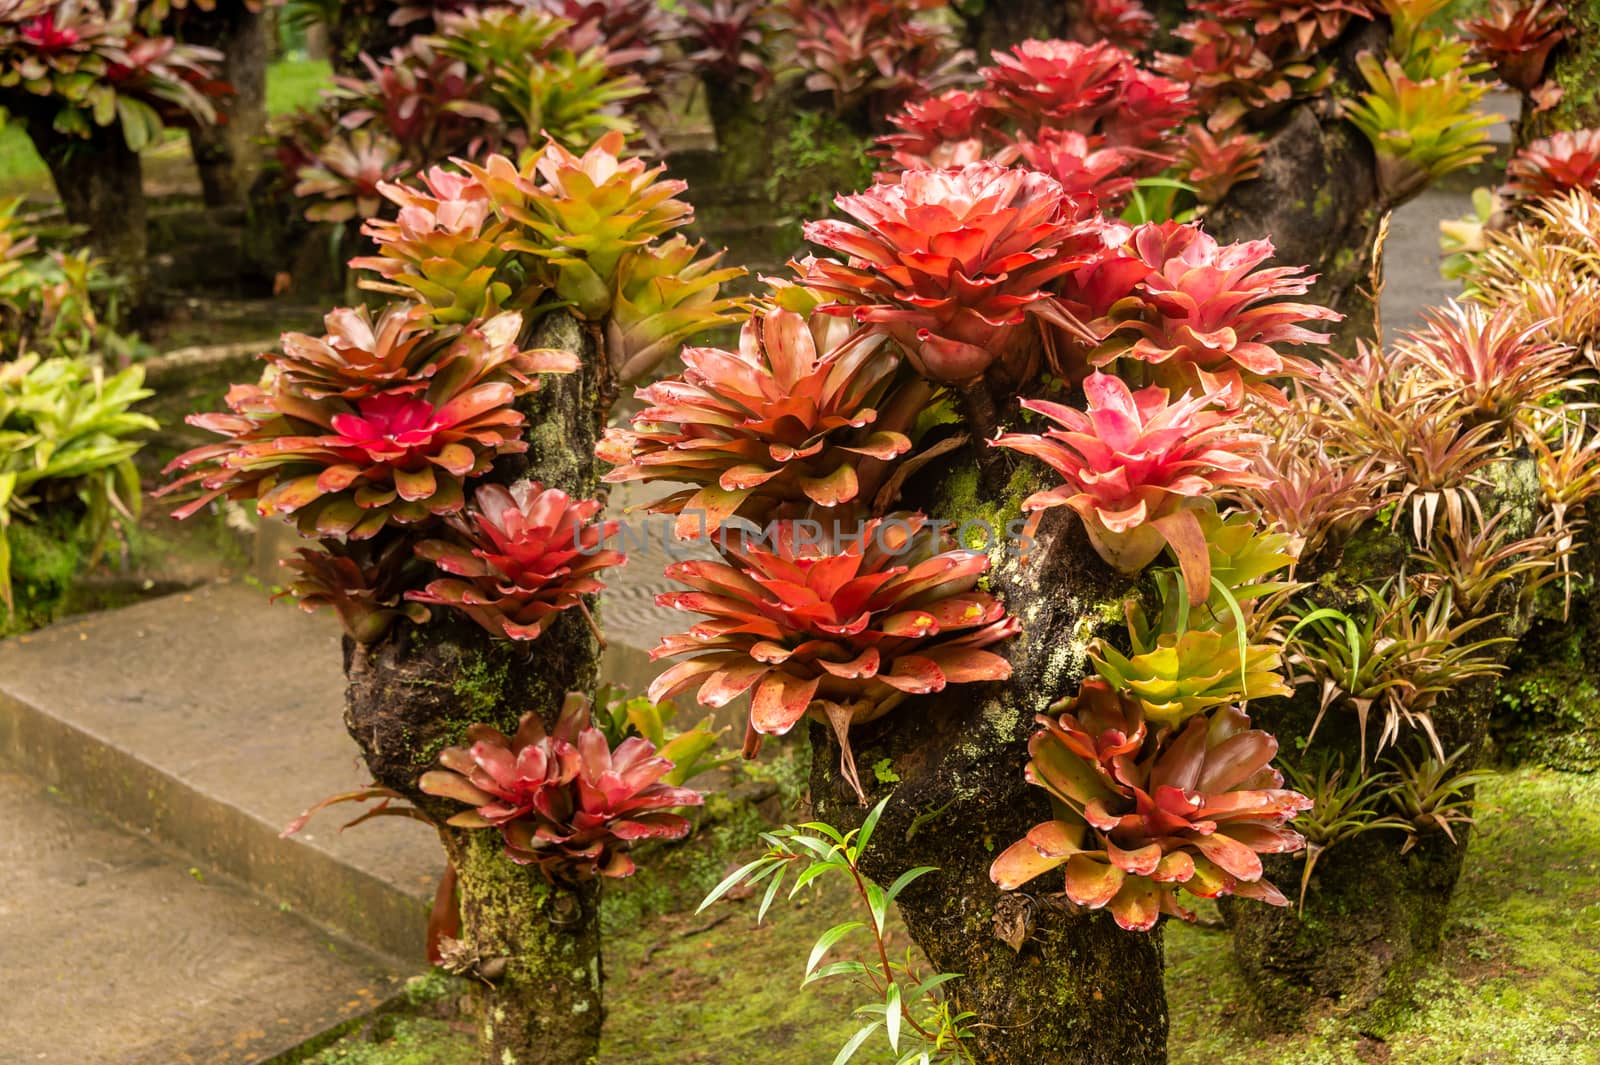 bromeliad plants in an outdoor garden